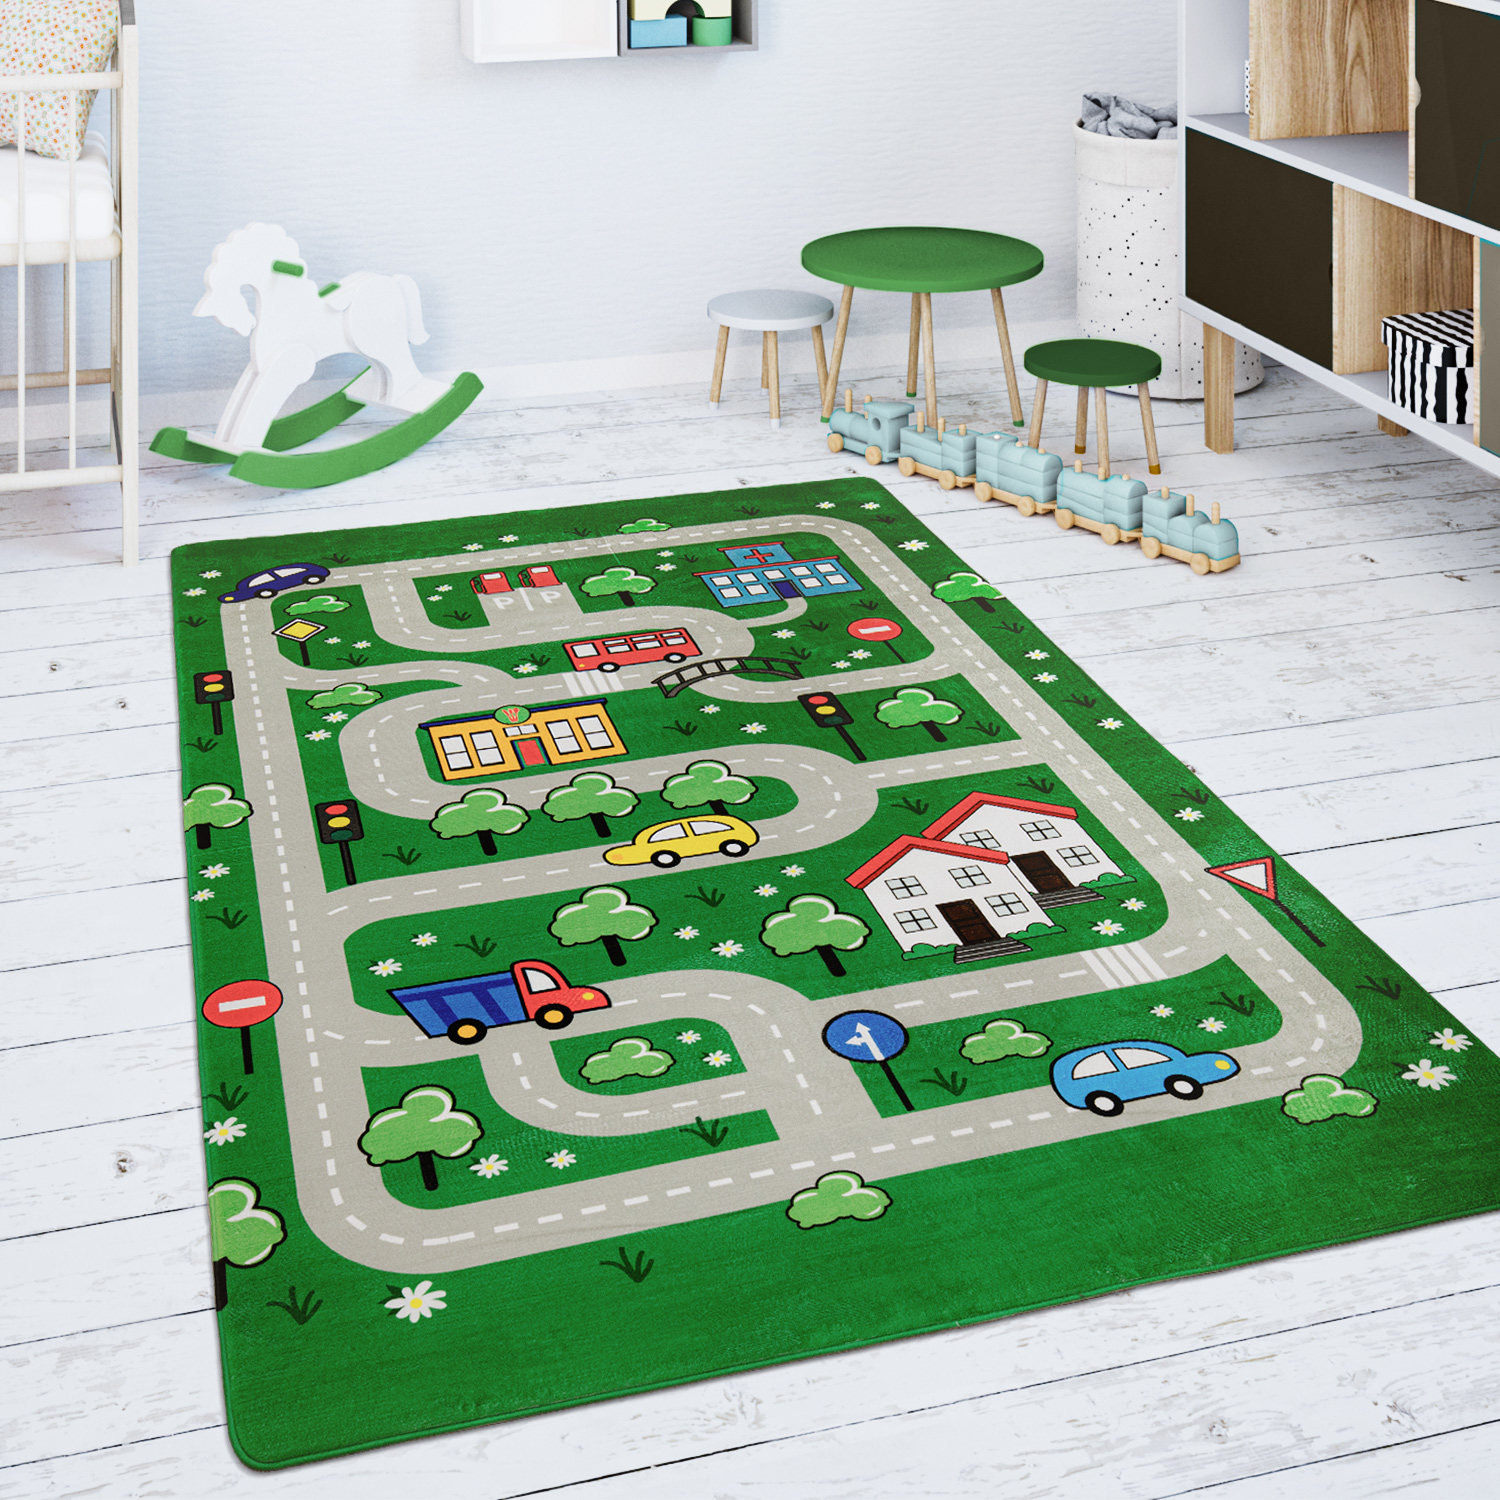 Kinderteppich Teppich Kinderzimmer Straßenteppich Grün Kind